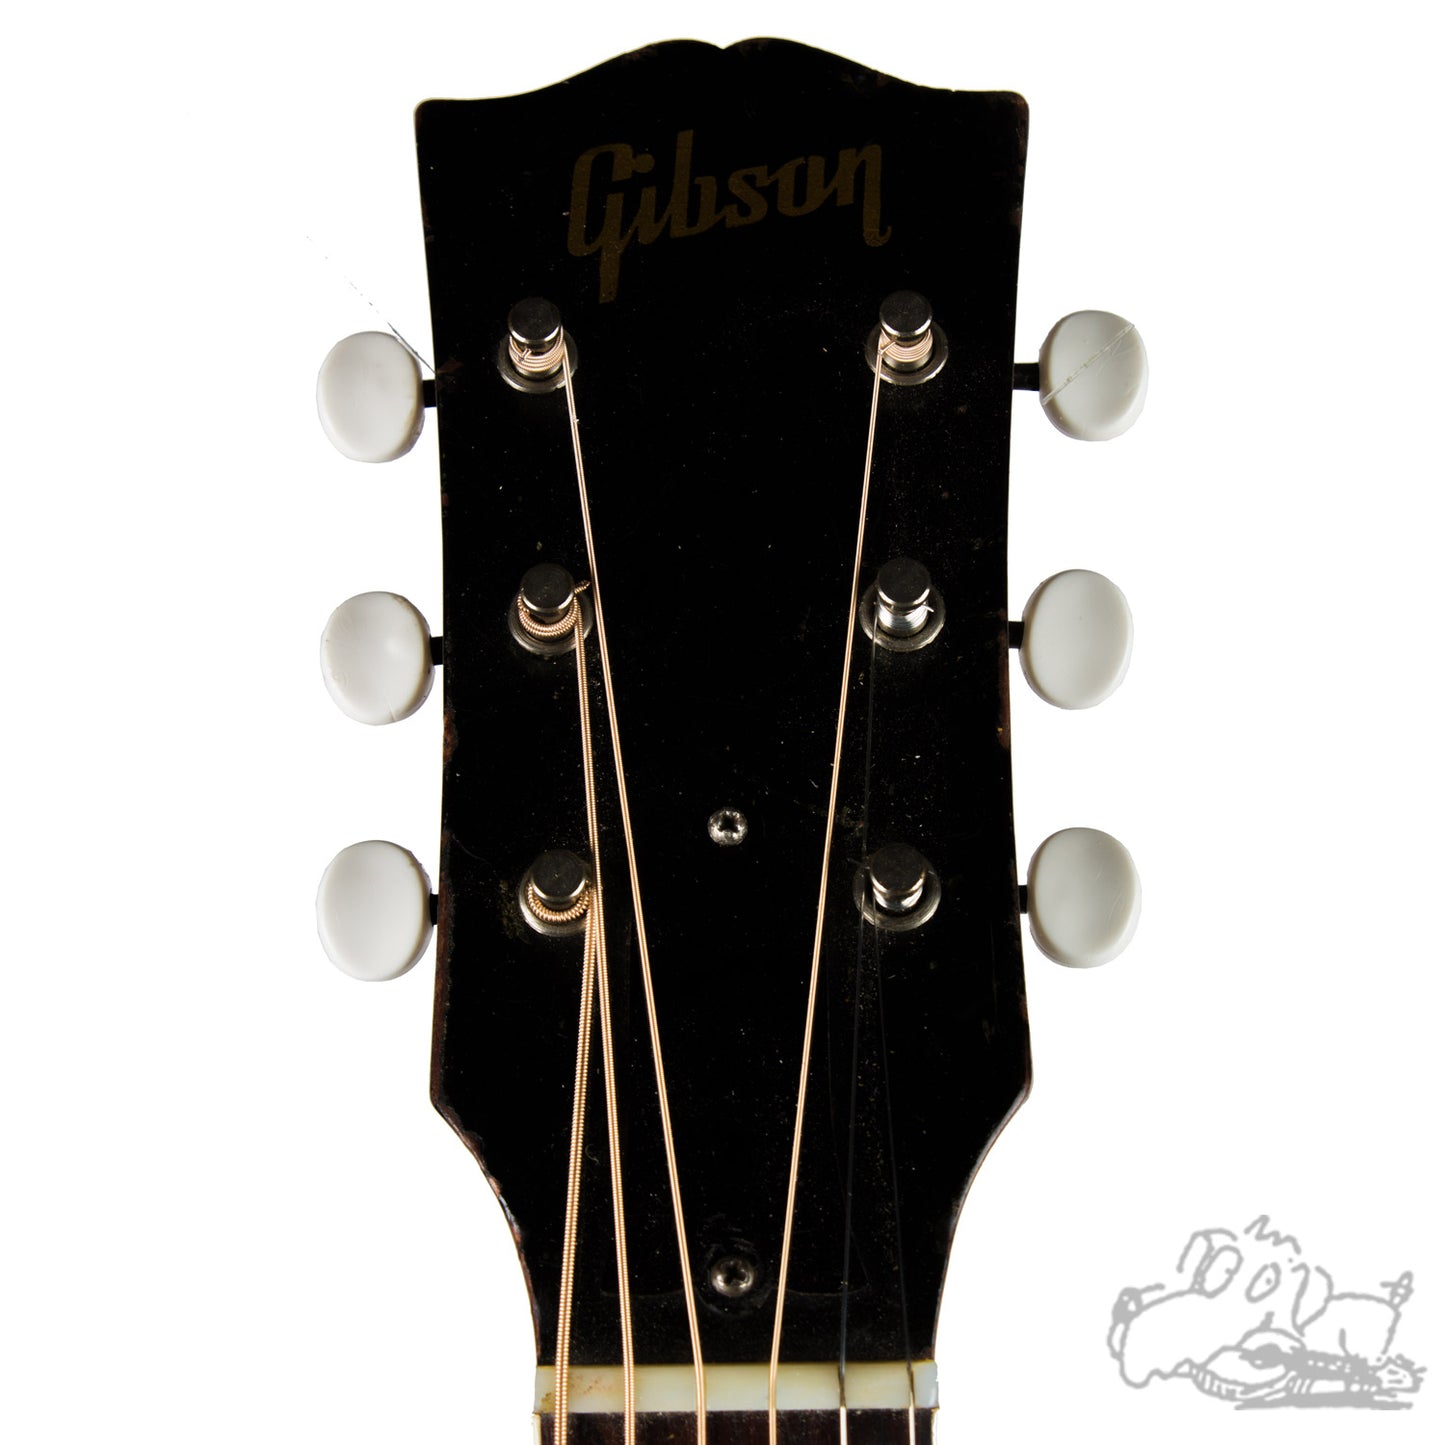 1949 Gibson Southern Jumbo